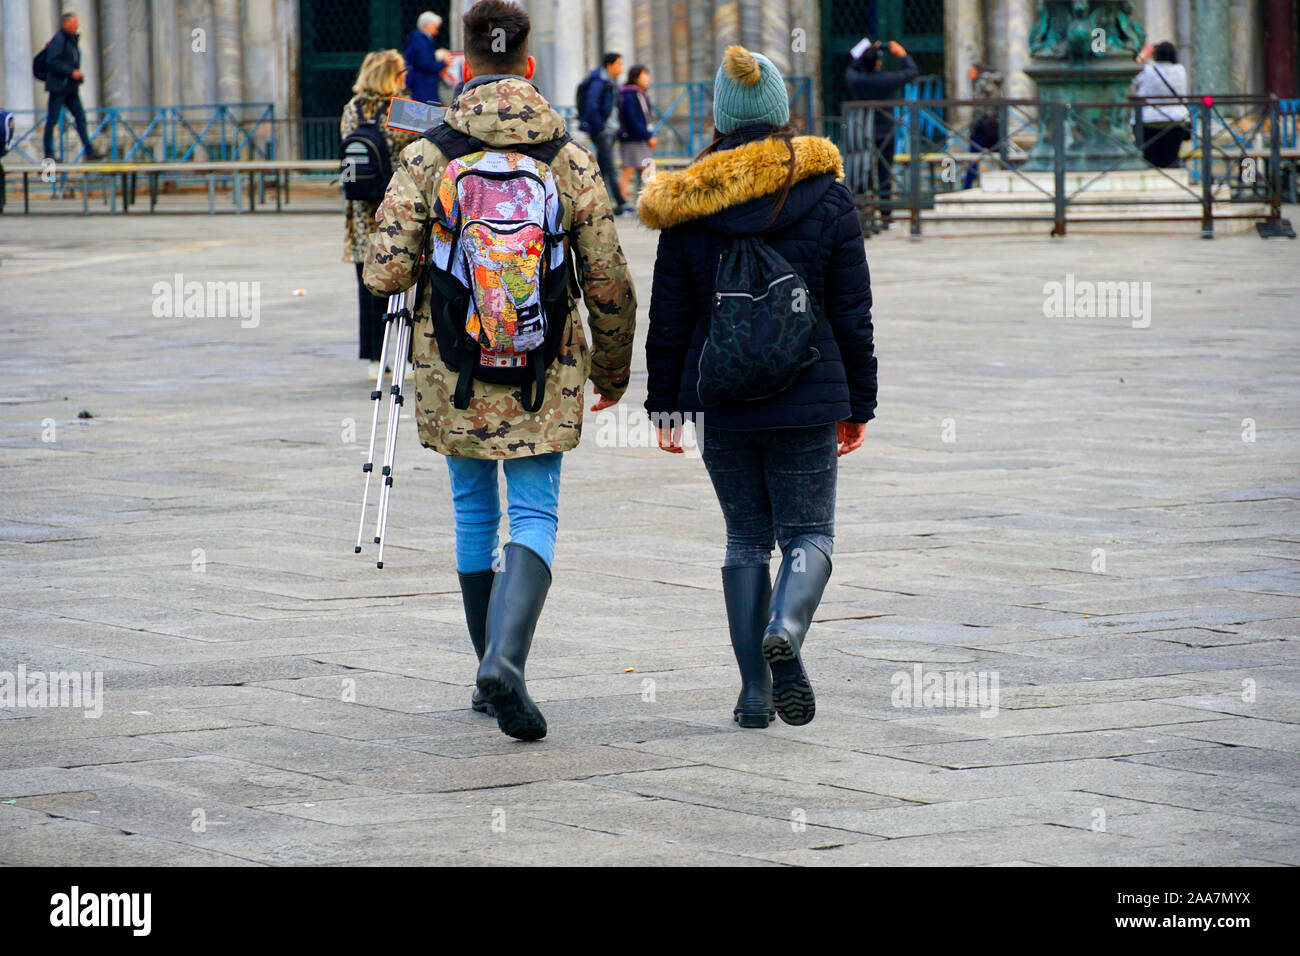 Zwei junge Touristen zu Fuß auf den Markusplatz in Gummistiefel zwei Tage  nach Hochwasser in Venedig, Italien am 18. November 2019 Stockfotografie -  Alamy